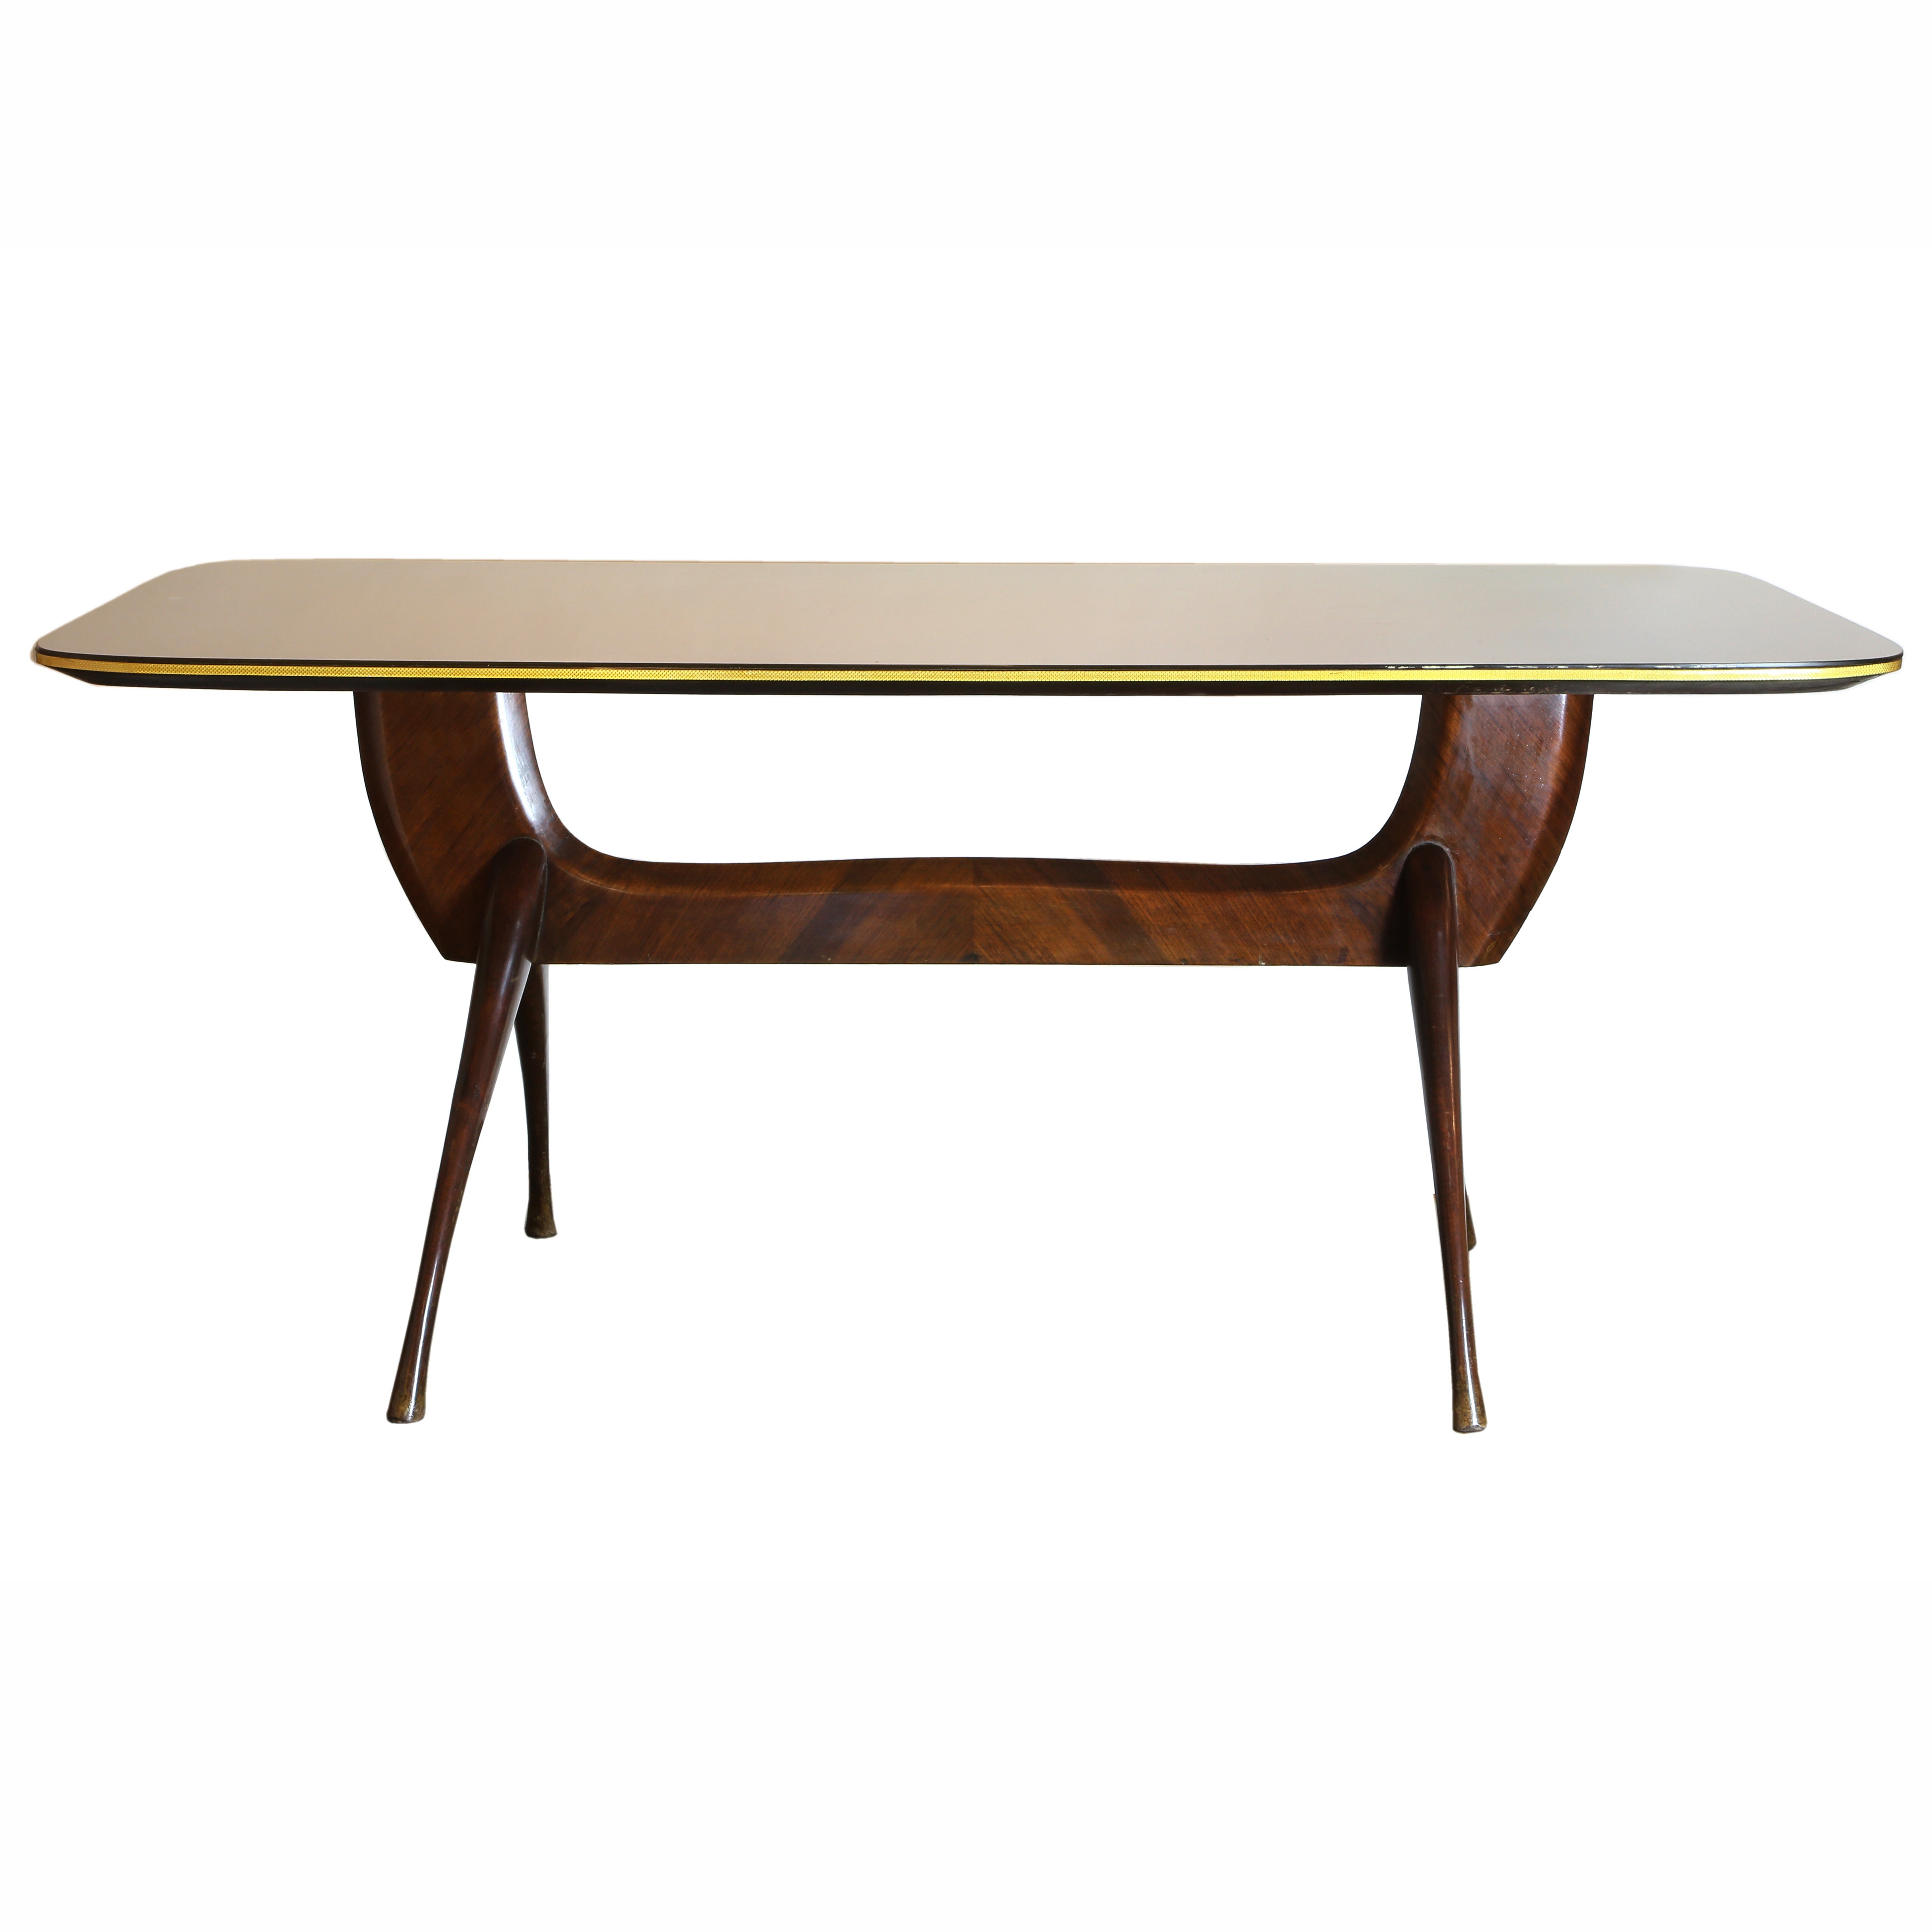 Italian Design Glass-Top Table Attributed to Vittorio Dassi